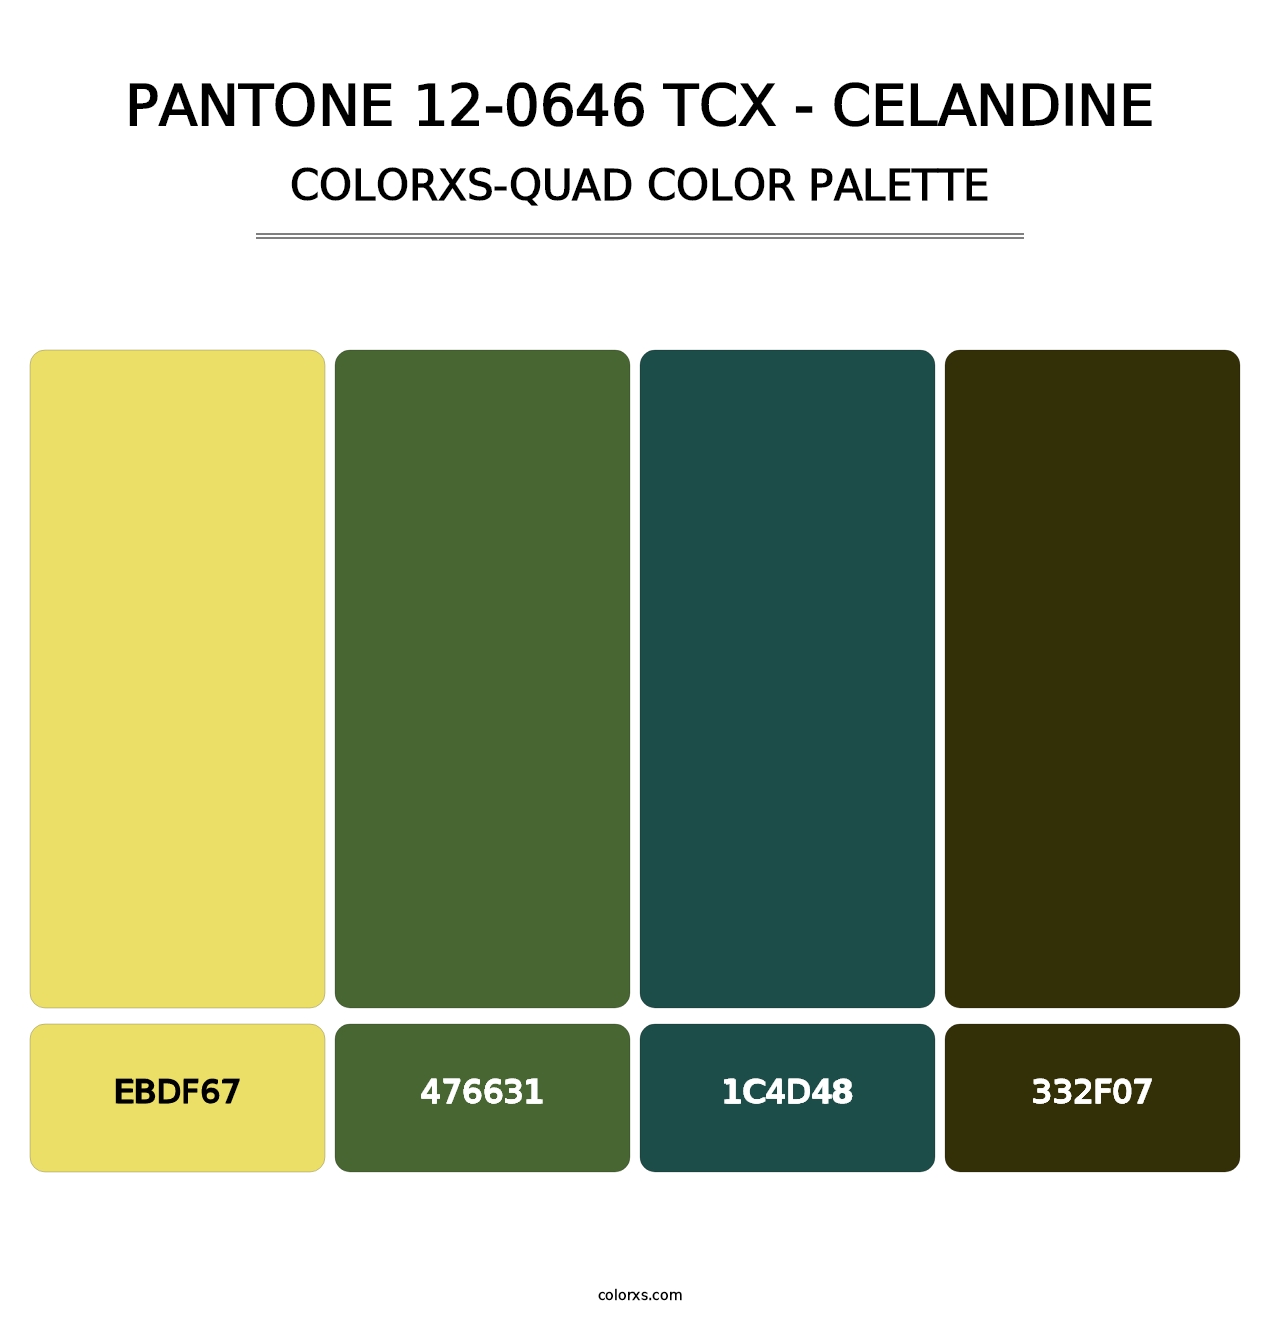 PANTONE 12-0646 TCX - Celandine - Colorxs Quad Palette